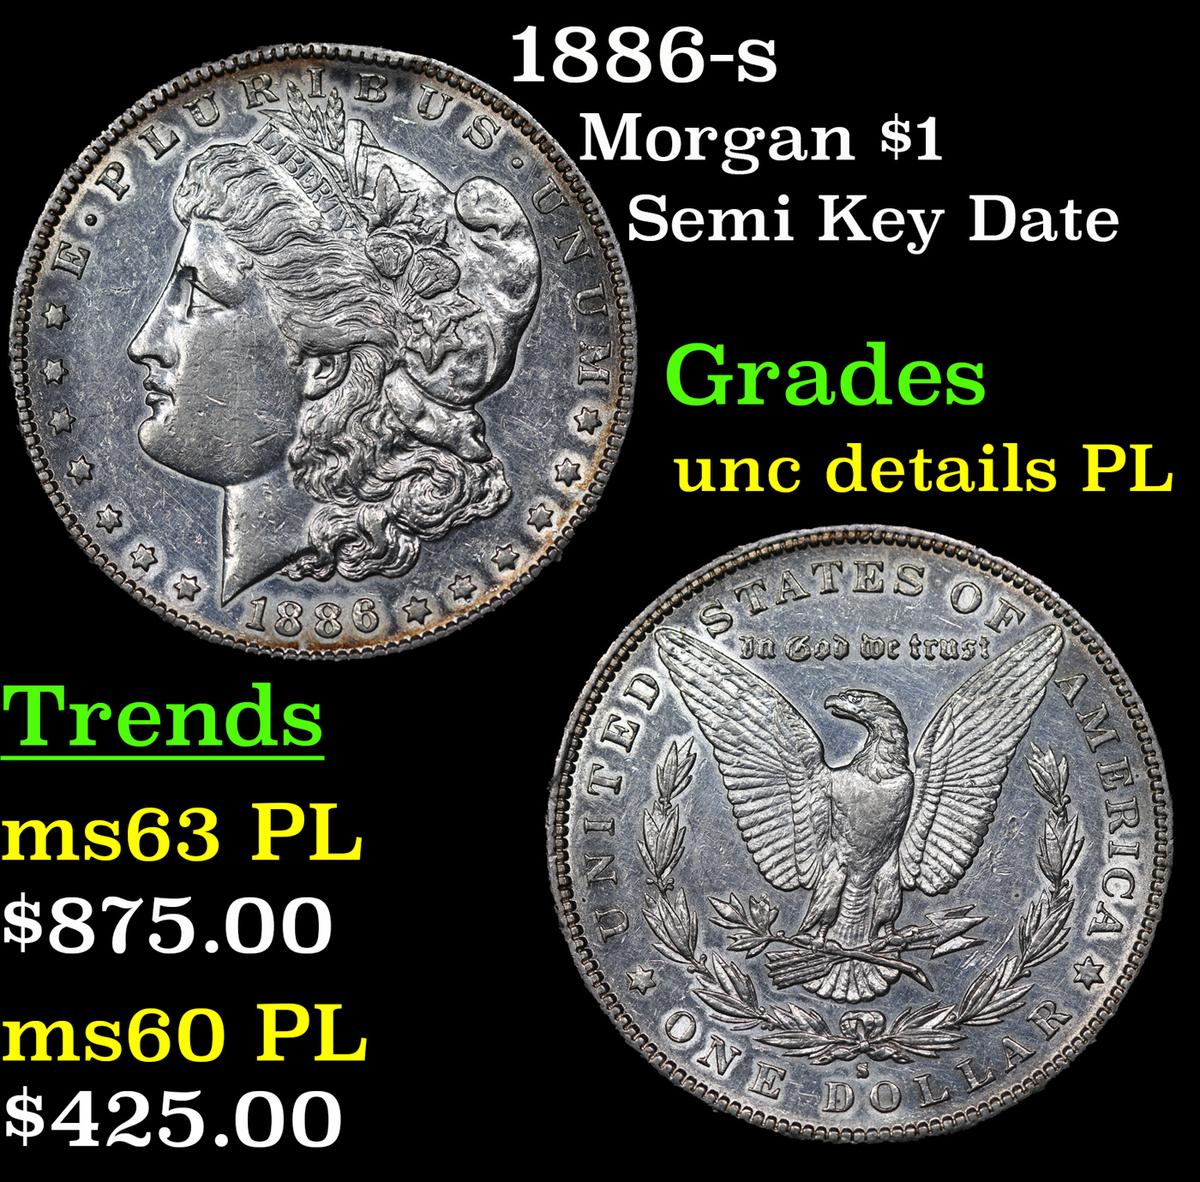 1886-s Morgan Dollar $1 Grades Unc pl Details